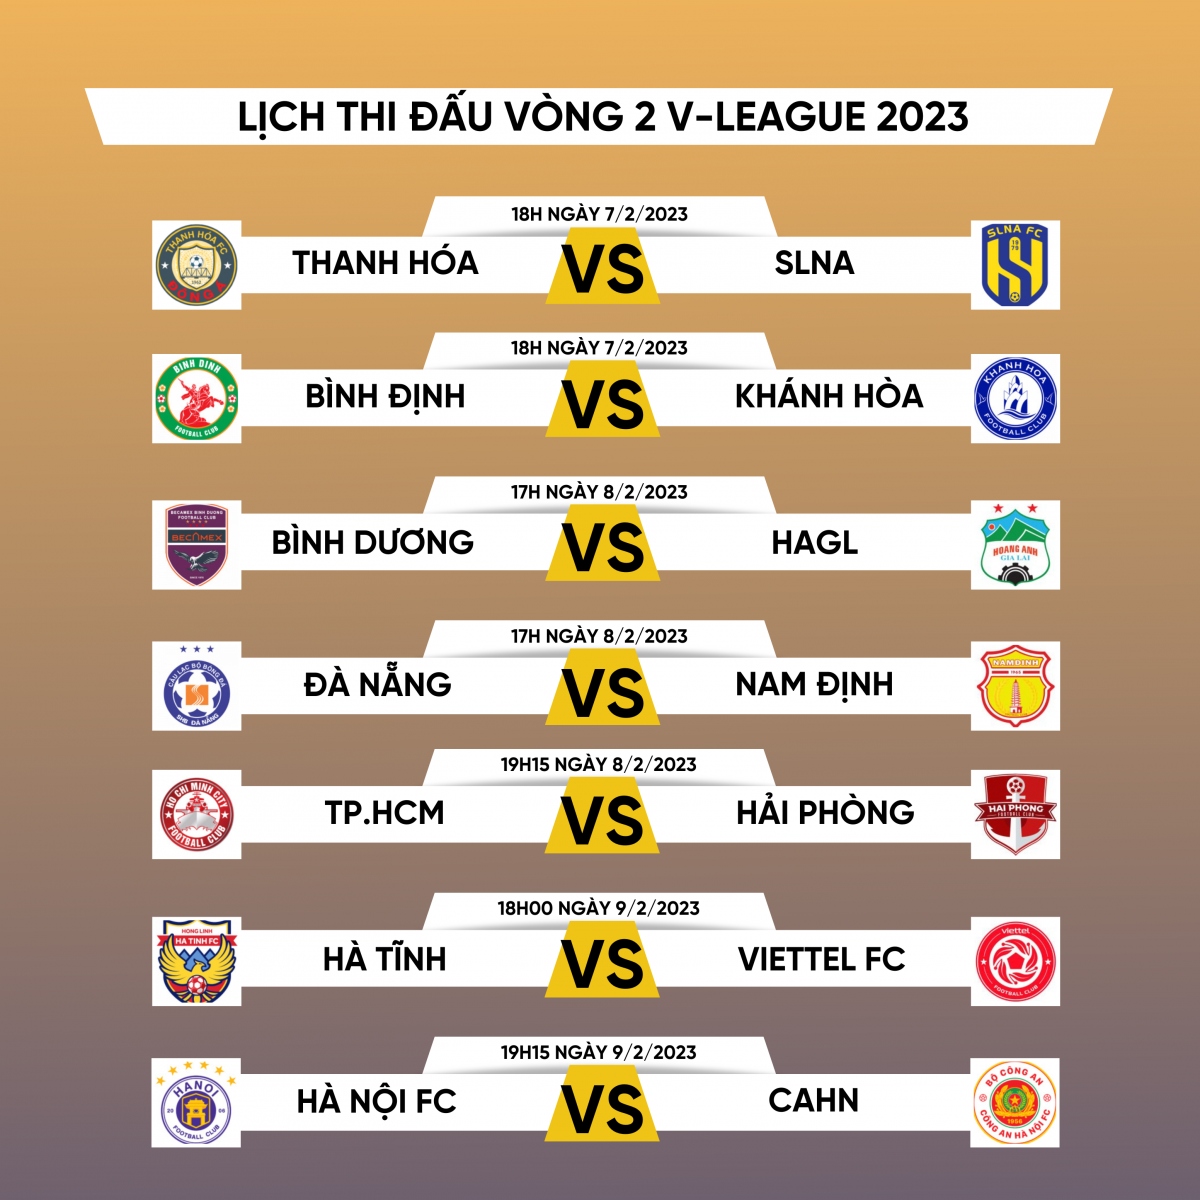 Lịch thi đấu vòng 2 V-League 2023: Hà Nội FC đại chiến CAHN, HAGL gặp khó - Ảnh 1.